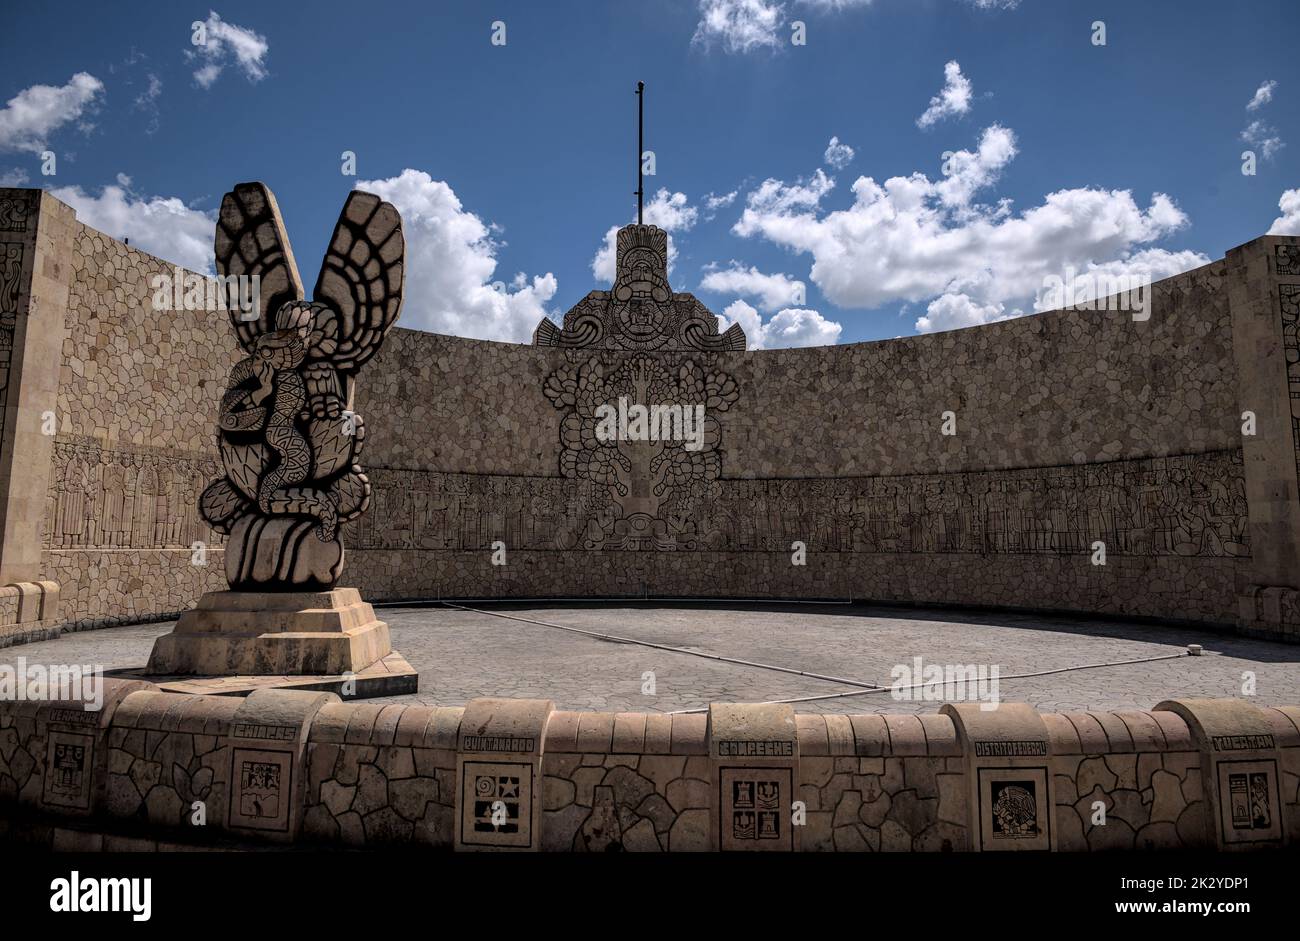 Verkehrskreis Skulptur monumento a la patria in Merida Stadt Mexiko. Handgeschnitzt, um das maya-Erbe der mexikanischen Ureinwohner zu ehren. Stockfoto